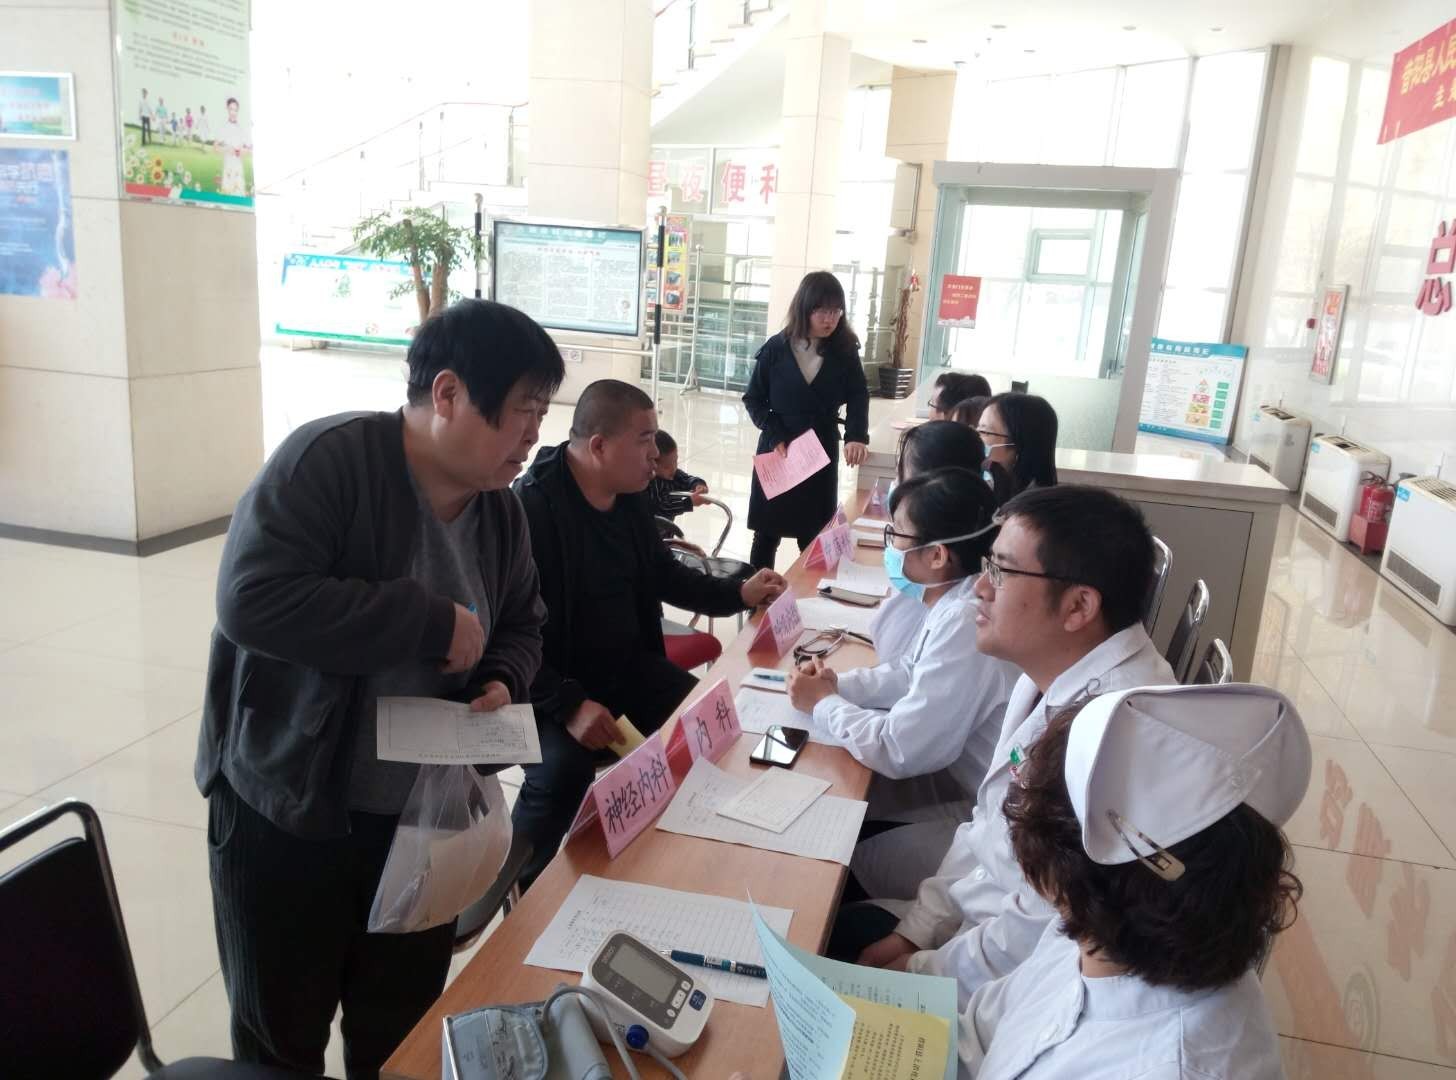 昔阳县人民医院举办全国肿瘤防治宣传周活动